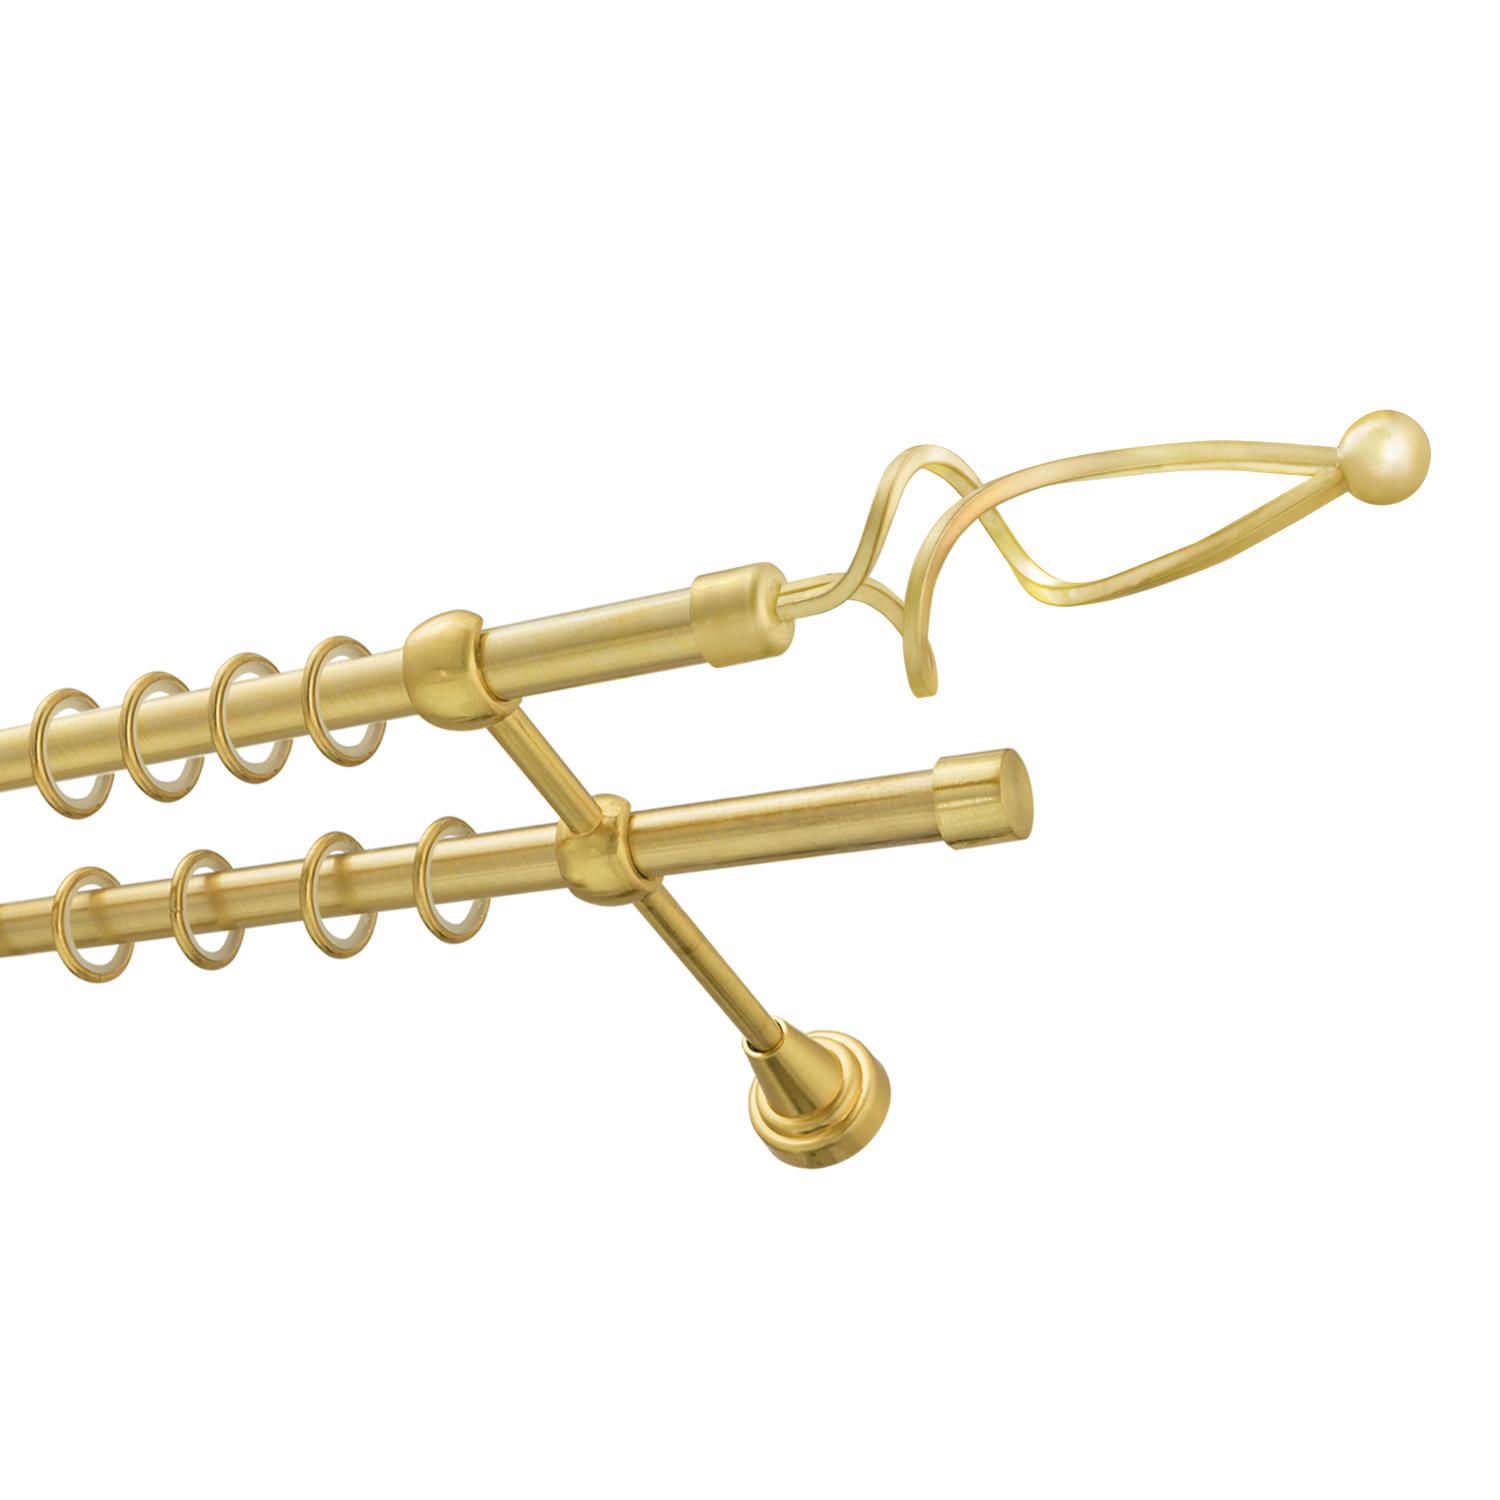 Металлический карниз для штор Жемчужина, двухрядный 16/16 мм, золото, гладкая штанга, длина 300 см - фото Wikidecor.ru